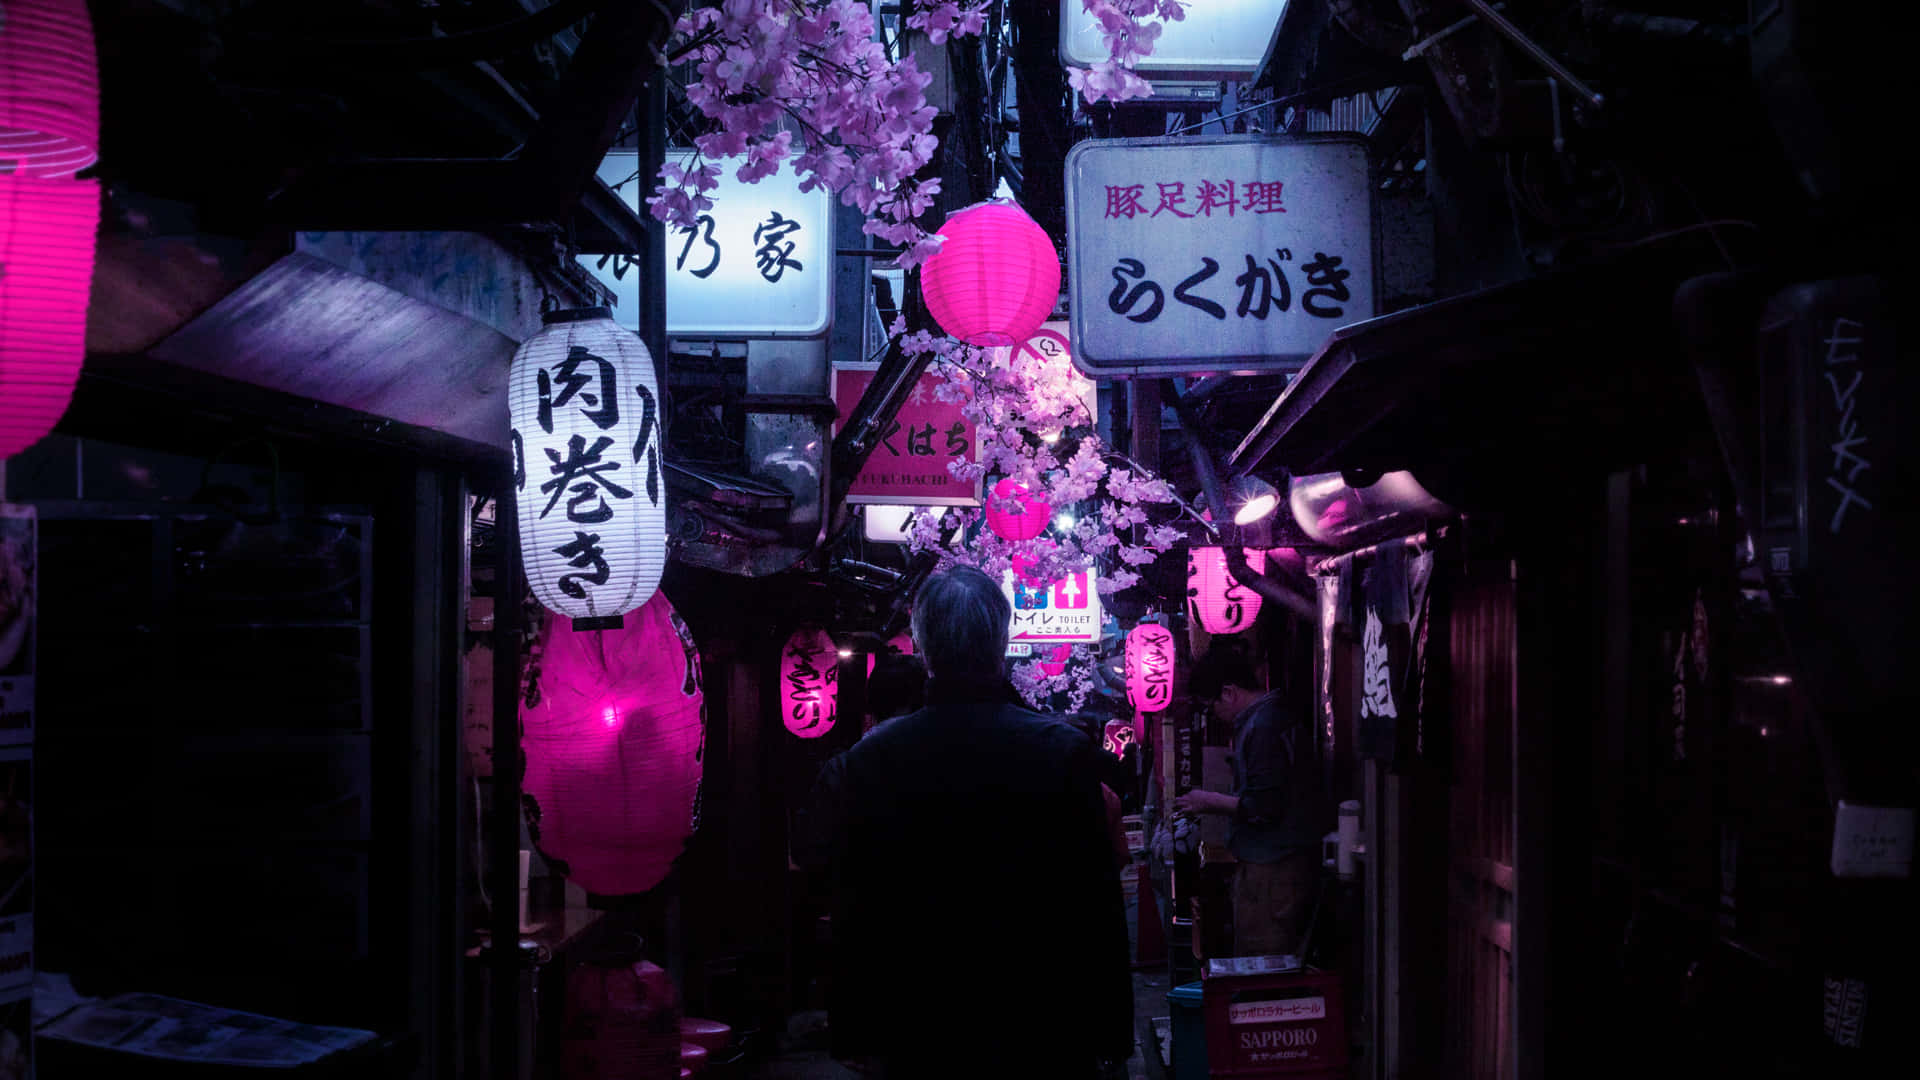 Hintergrundbildvon Tokio: Enge Straße Im Zentrum Von Tokio